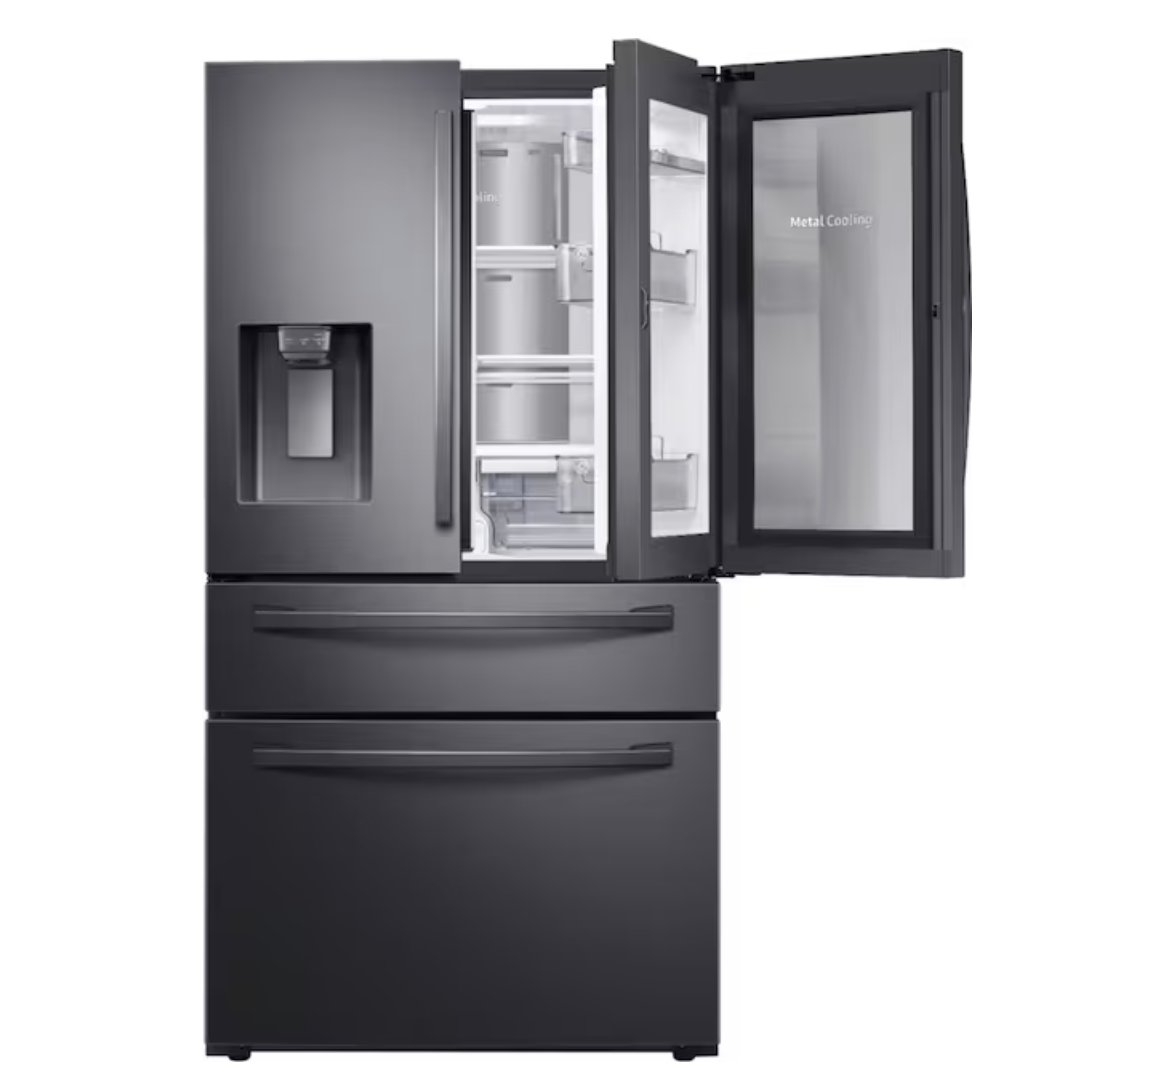 Samsung 4-Door French Door Refrigerator with Food Showcase